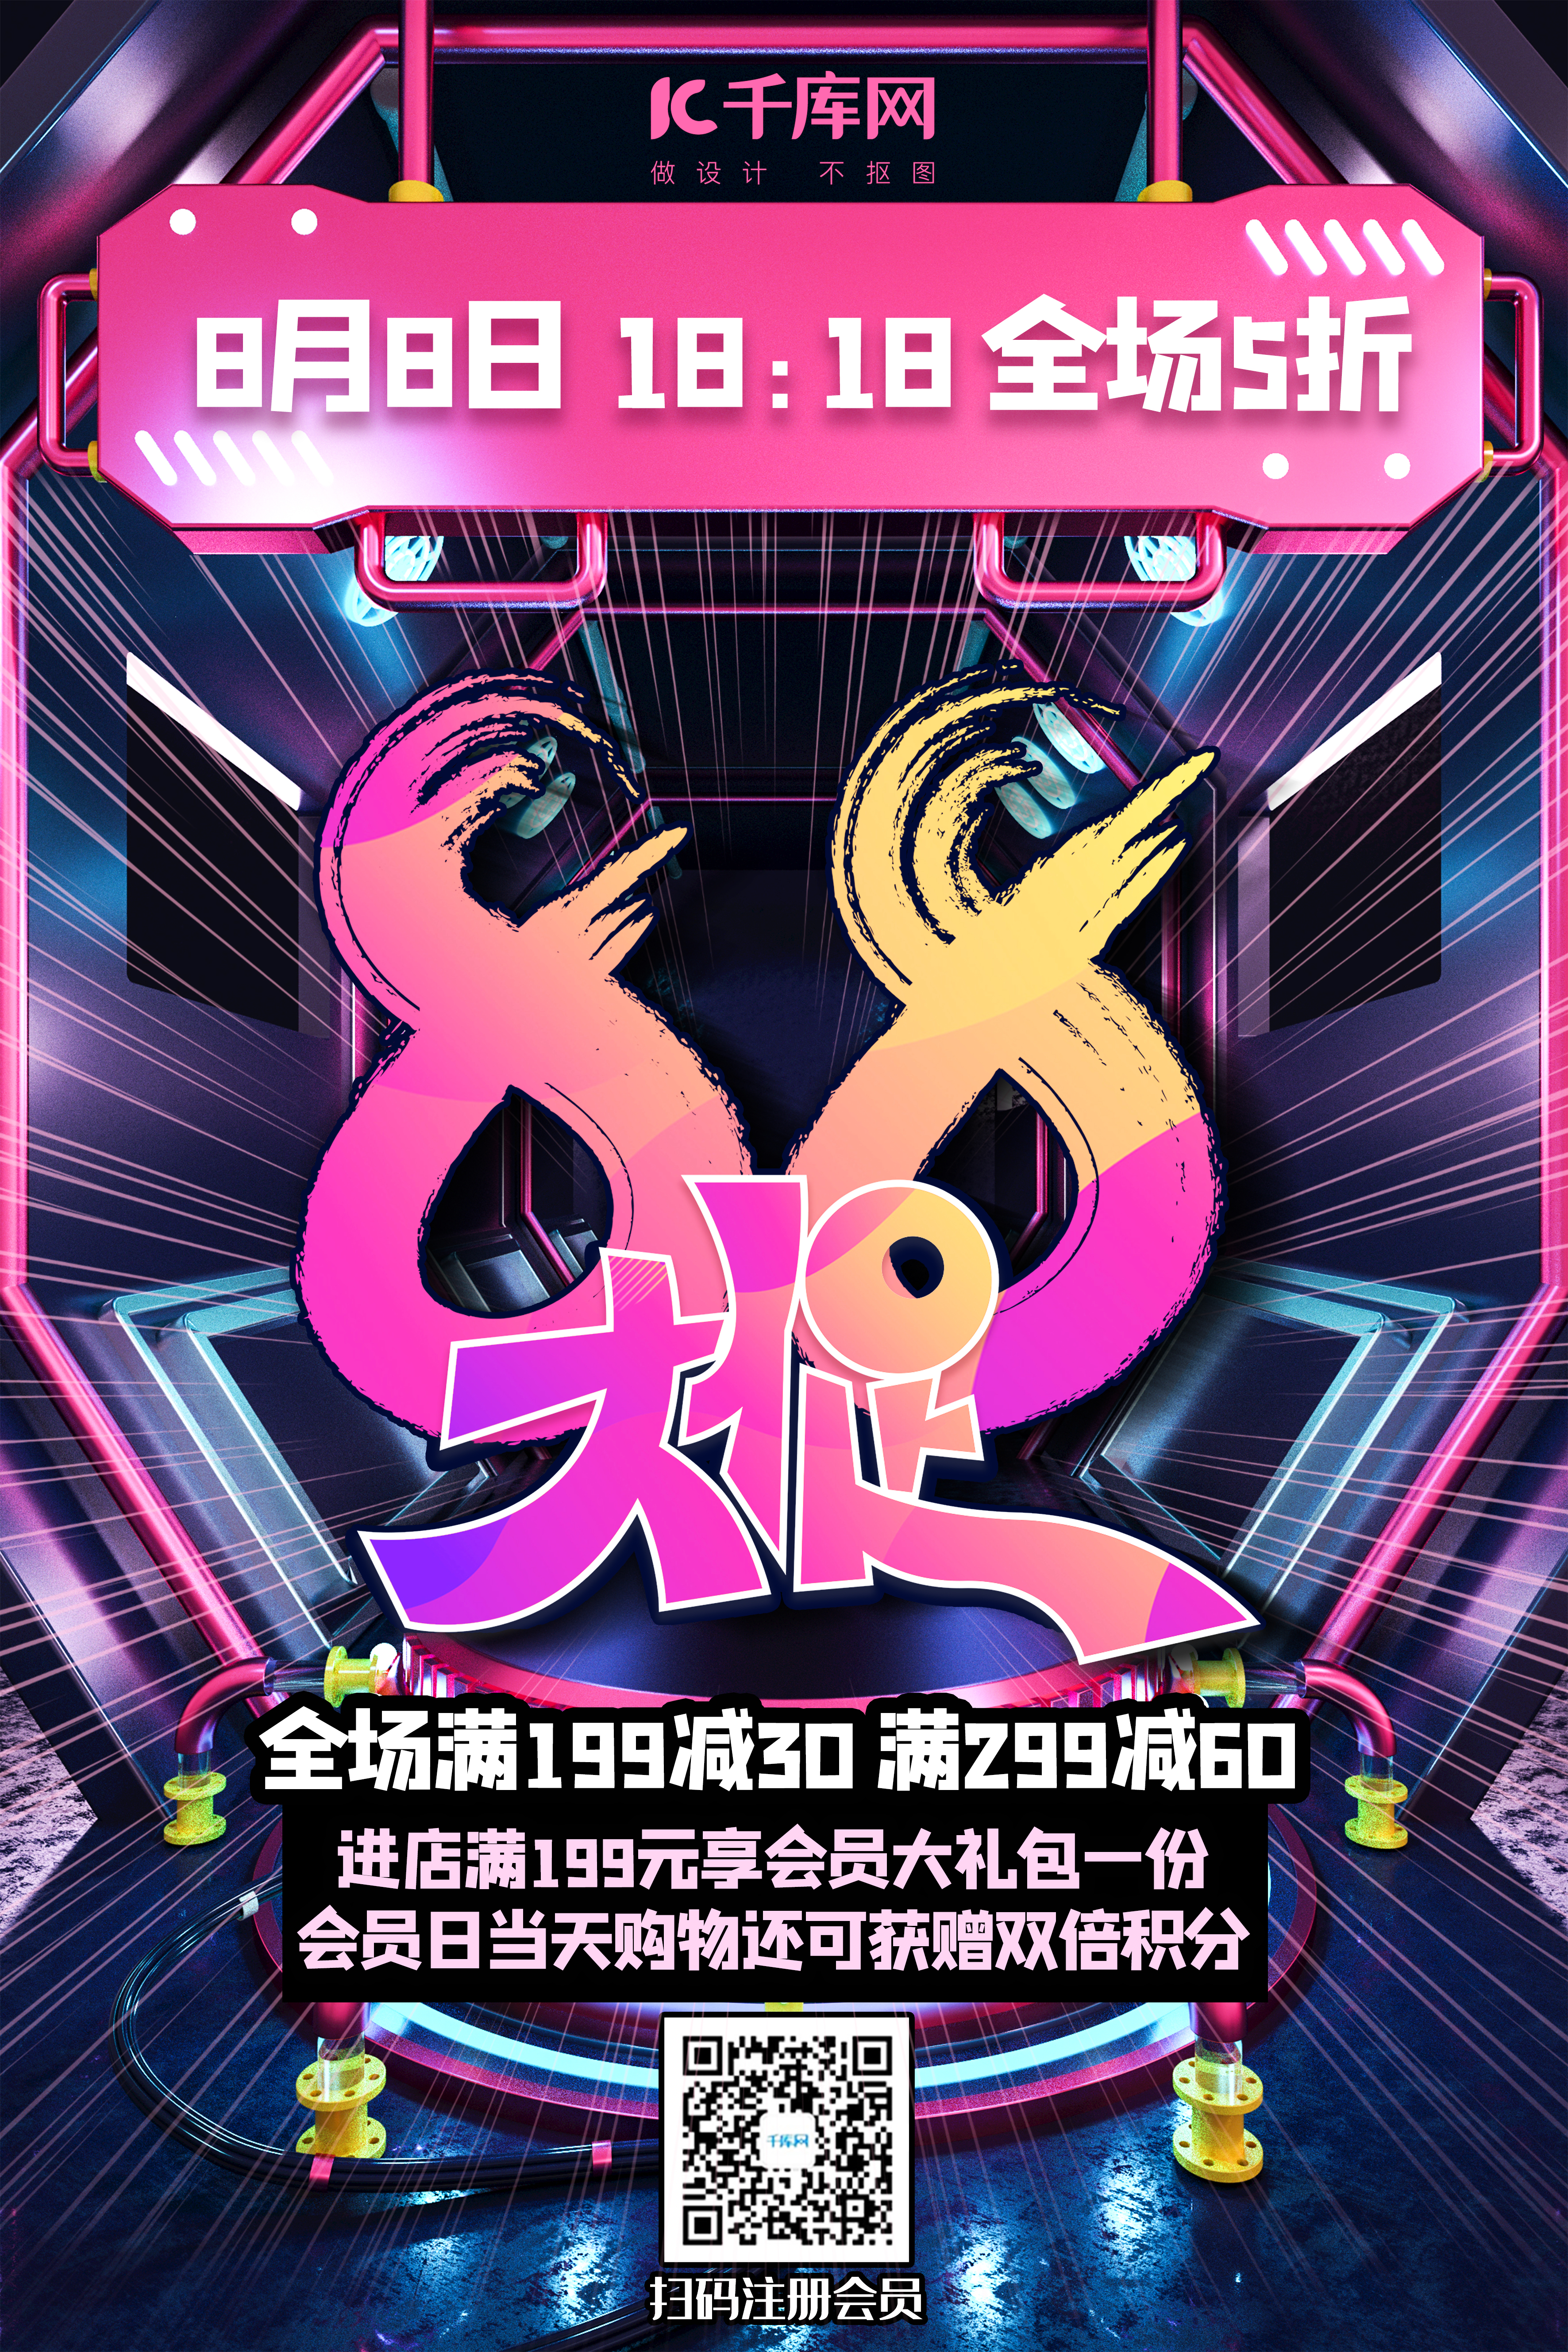 88会员日大促销炫紫朋克风格海报图片